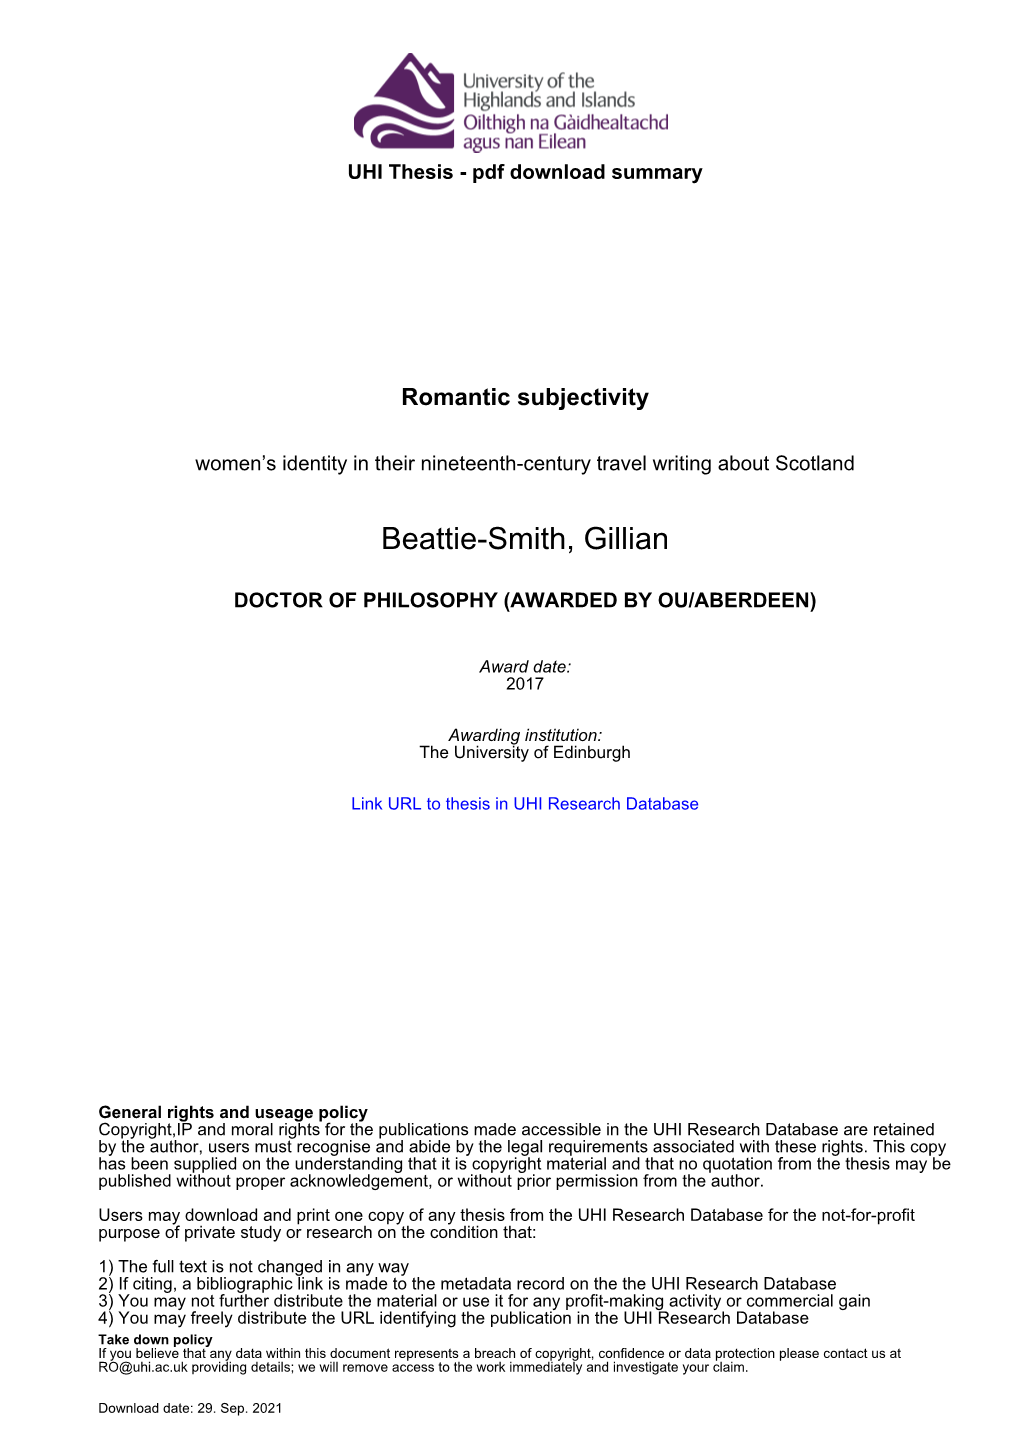 Beattie-Smith, Gillian